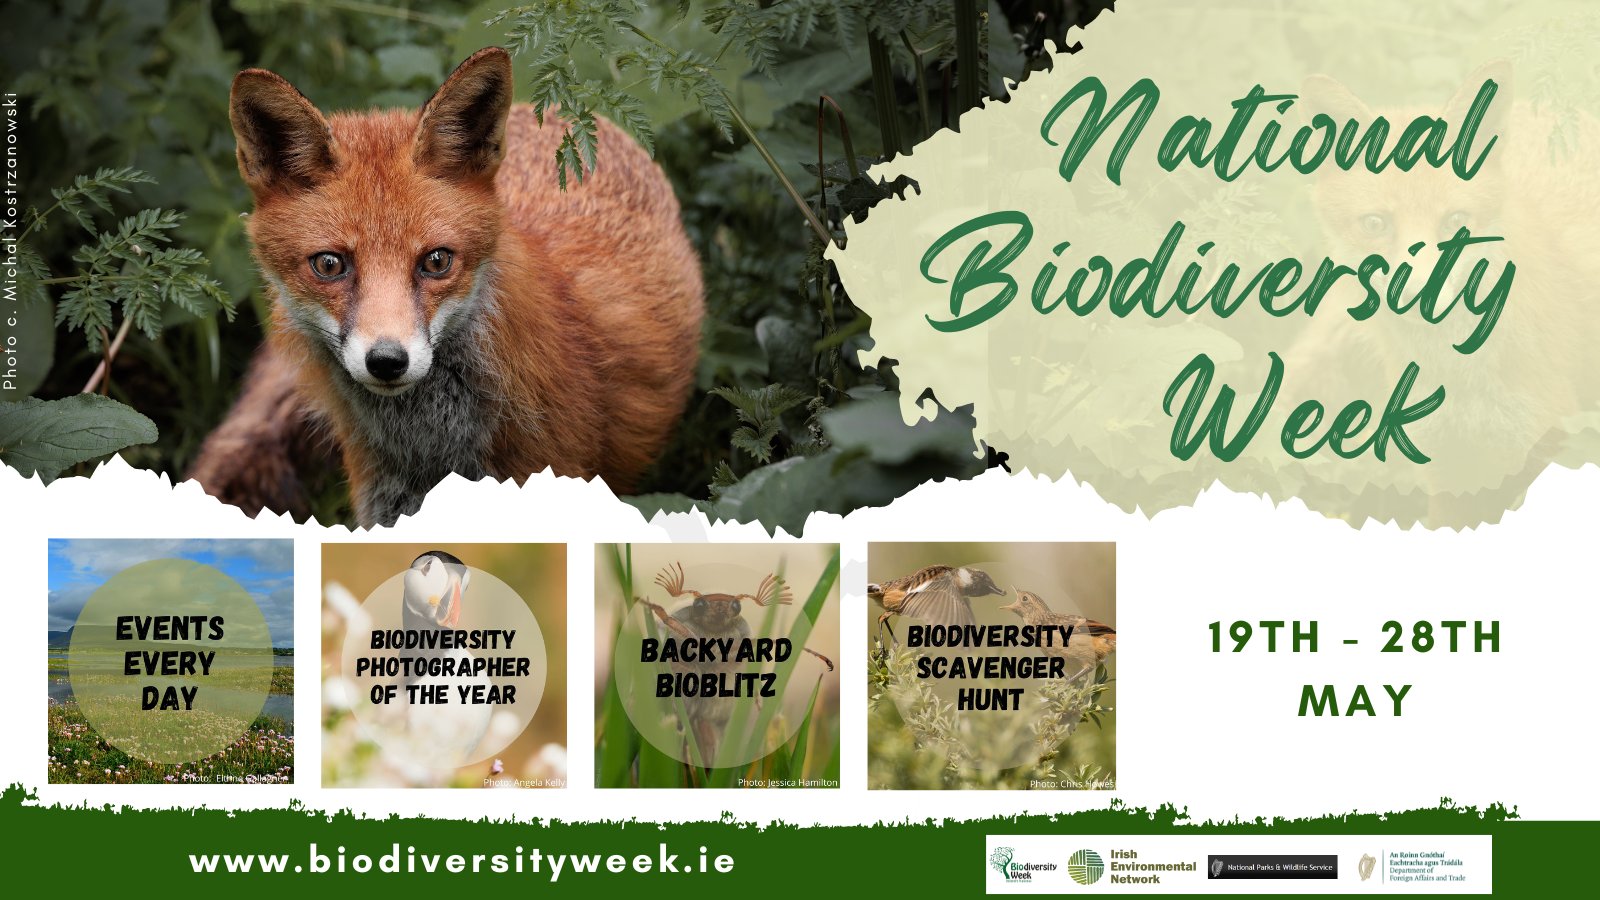 Ireland National Biodiversity Week